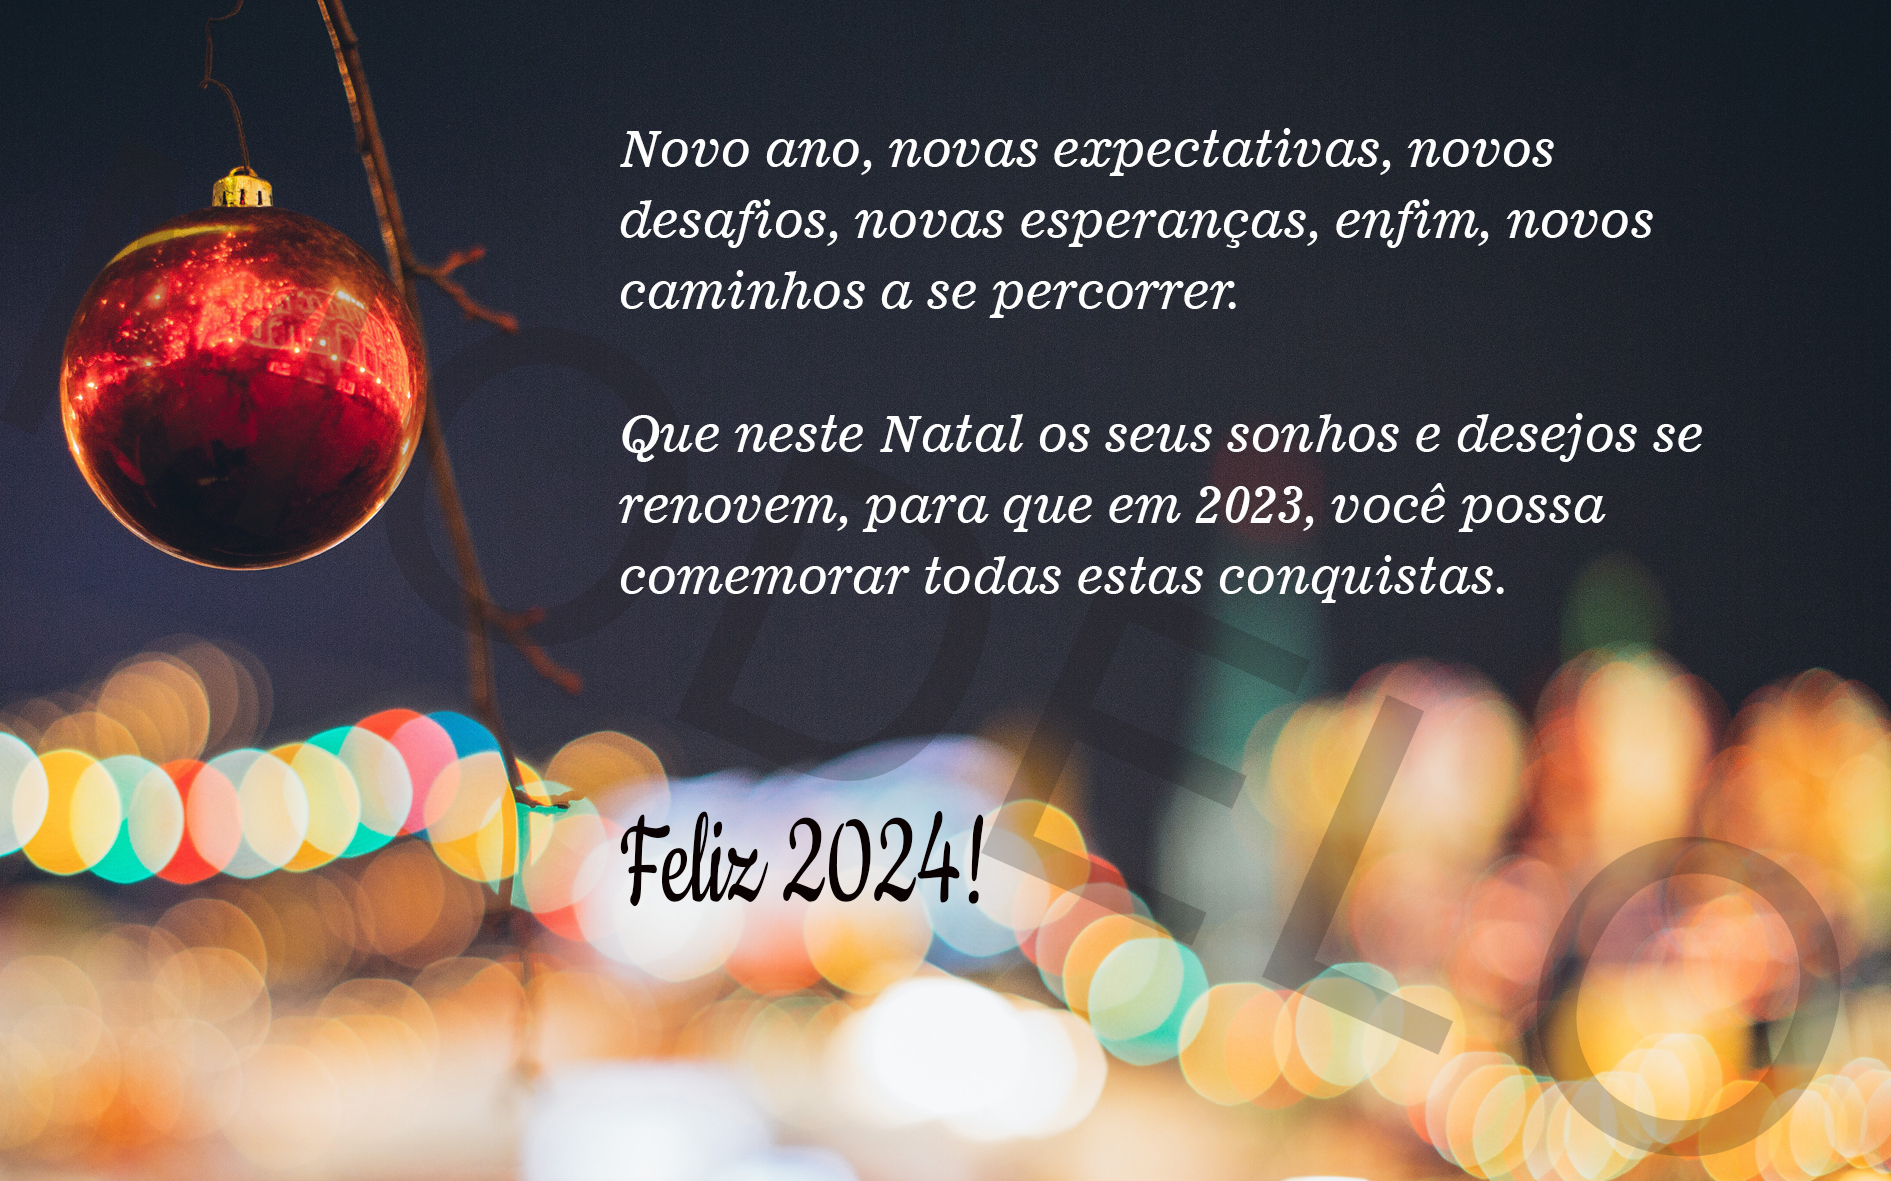 Novo ano, novas expectativas, novos desafios, novas esperanças, enfim, novos caminhos a se percorrer.

Que neste Natal os seus sonhos e desejos se renovem, para que em 2024, você possa comemorar todas estas conquistas.

Feliz 2024!
